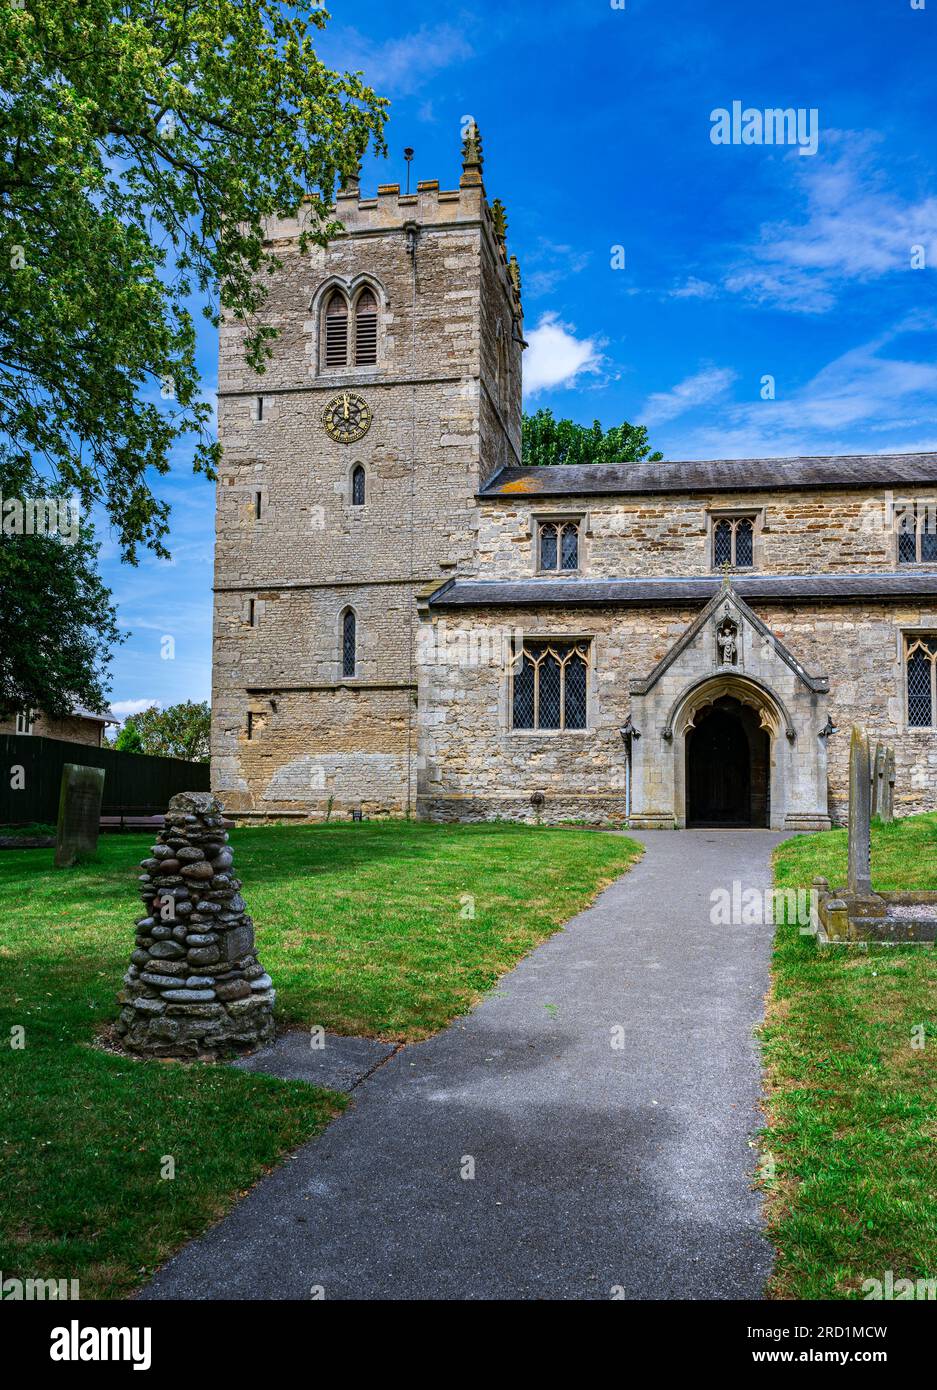 L'église du village de St Chad, Dunholme, Lincolnshire, Royaume-Uni - l'église paroissiale avec sa tour, qui est principalement médiévale en construction, par un chaud après-midi d'été sous un ciel bleu Banque D'Images